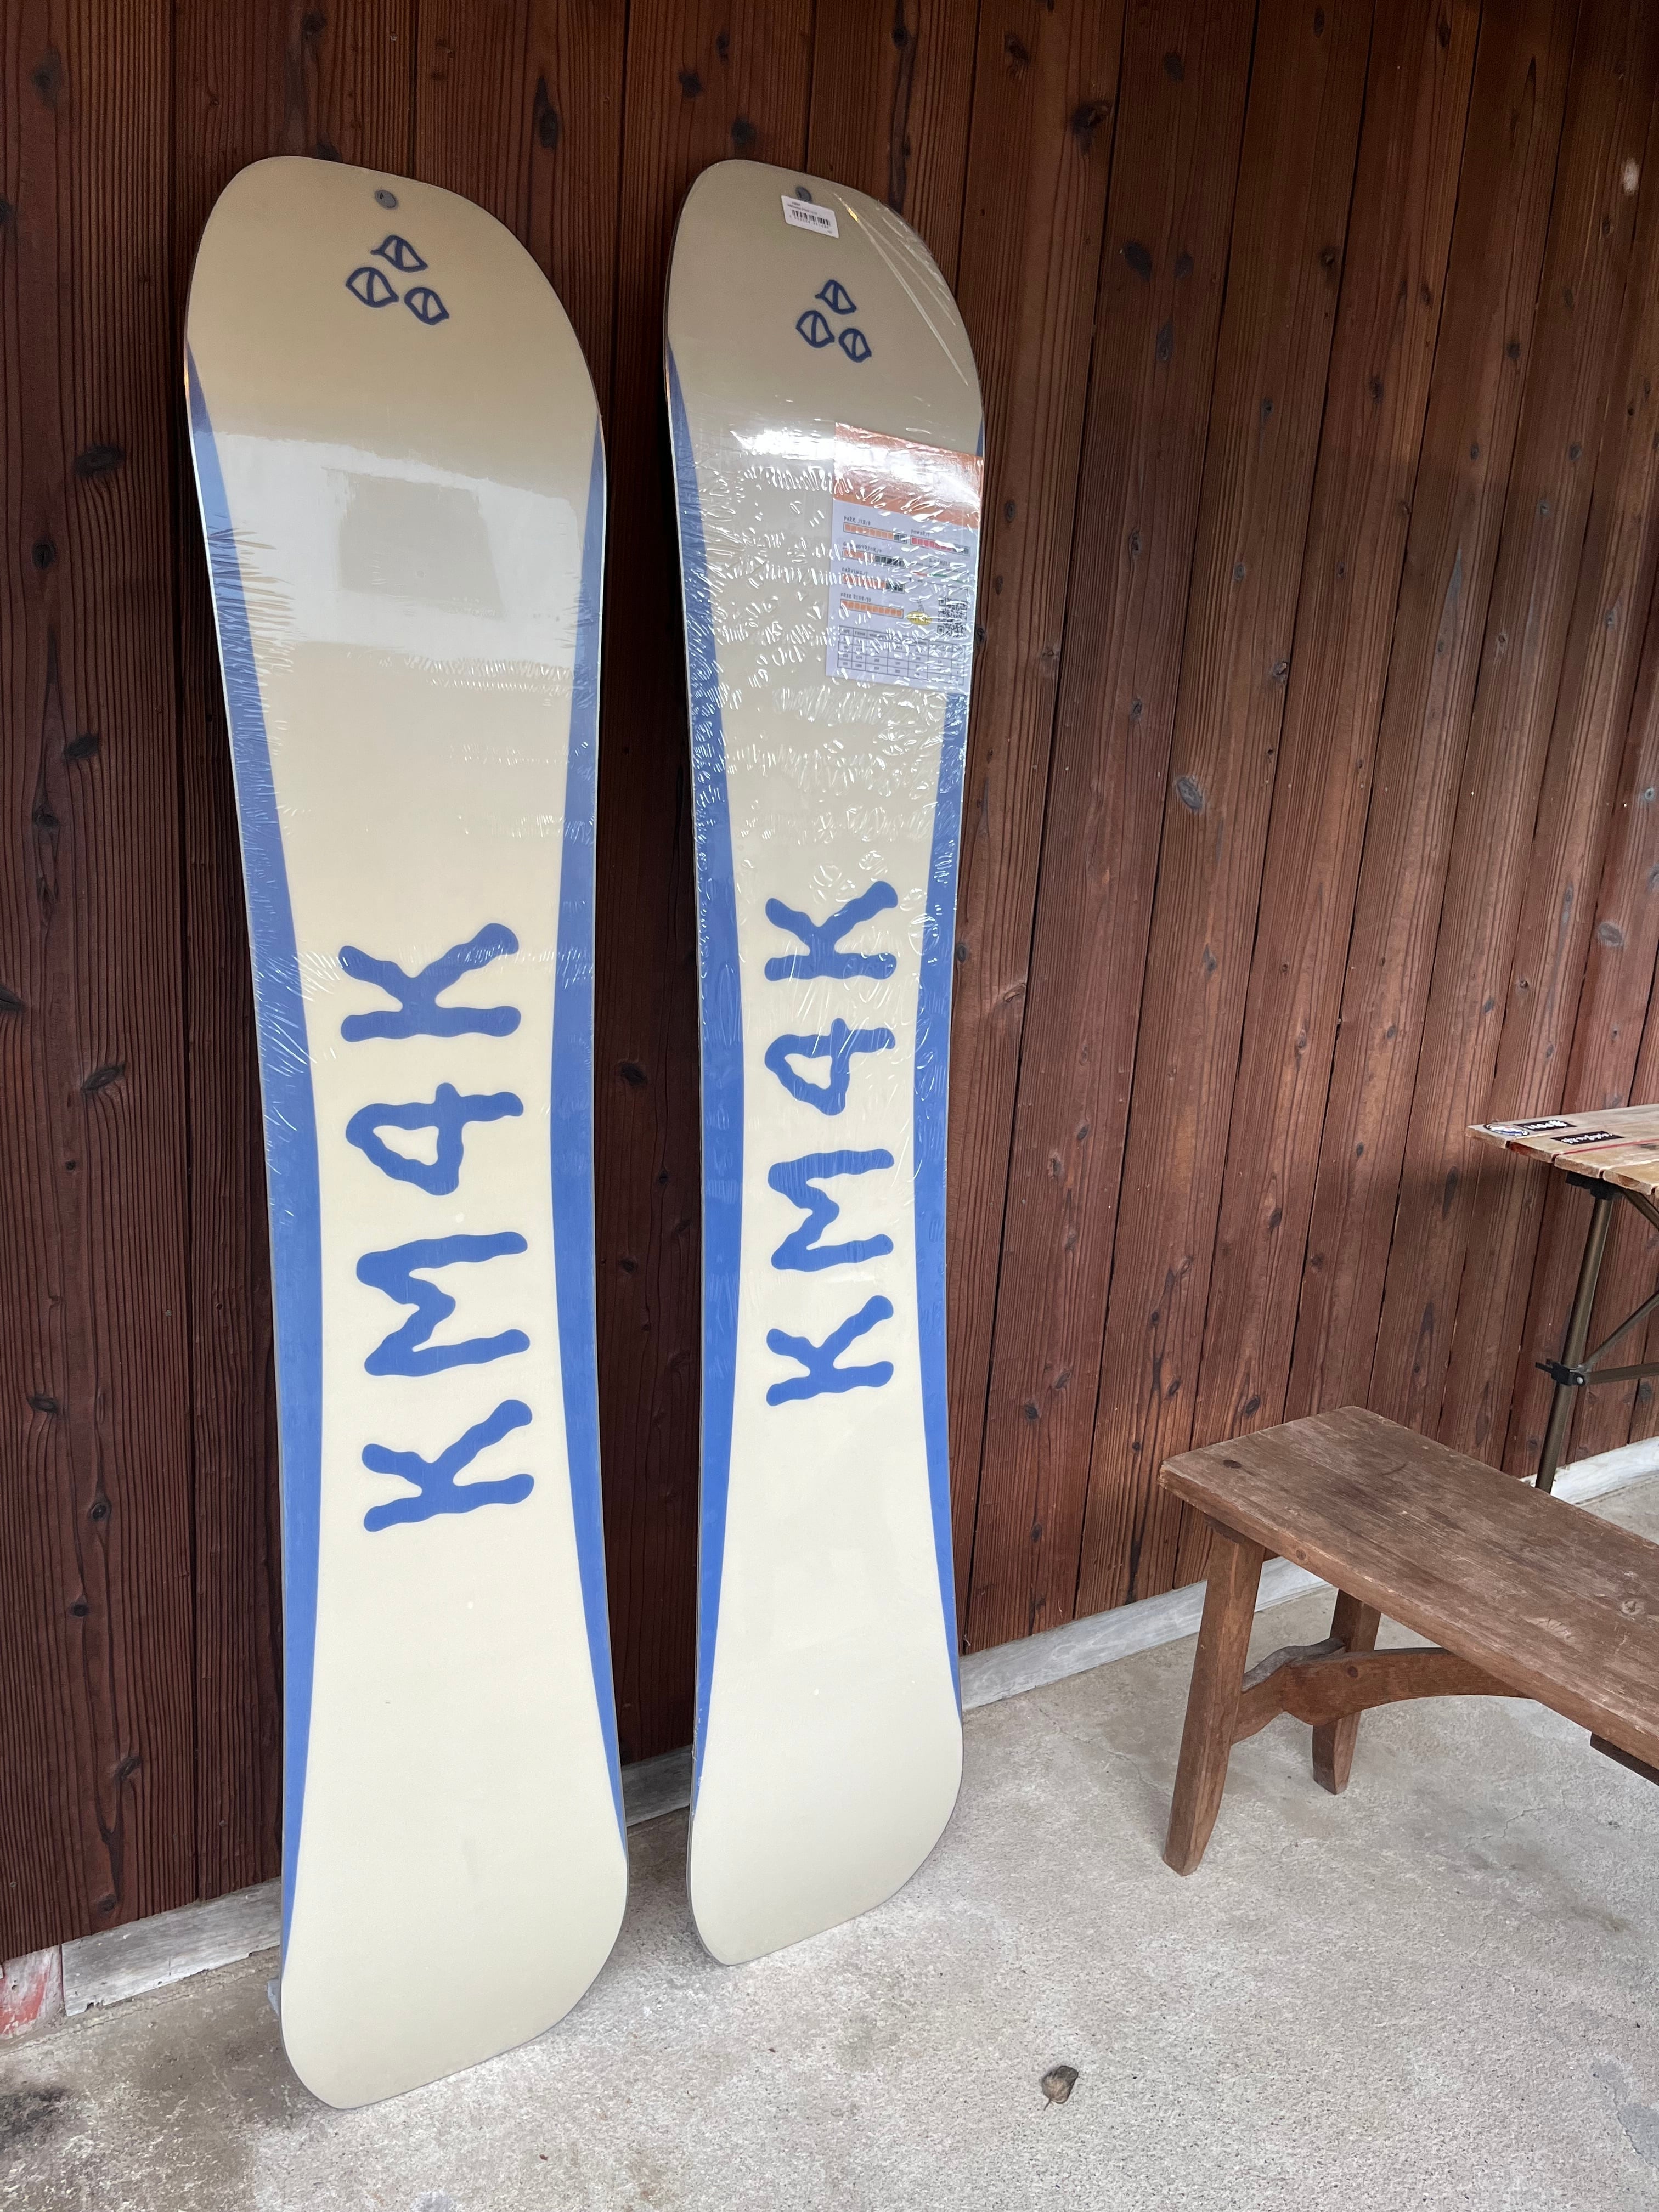 スノーボード km4kパラダイススティック2 152センチ ロームSDS - ボード